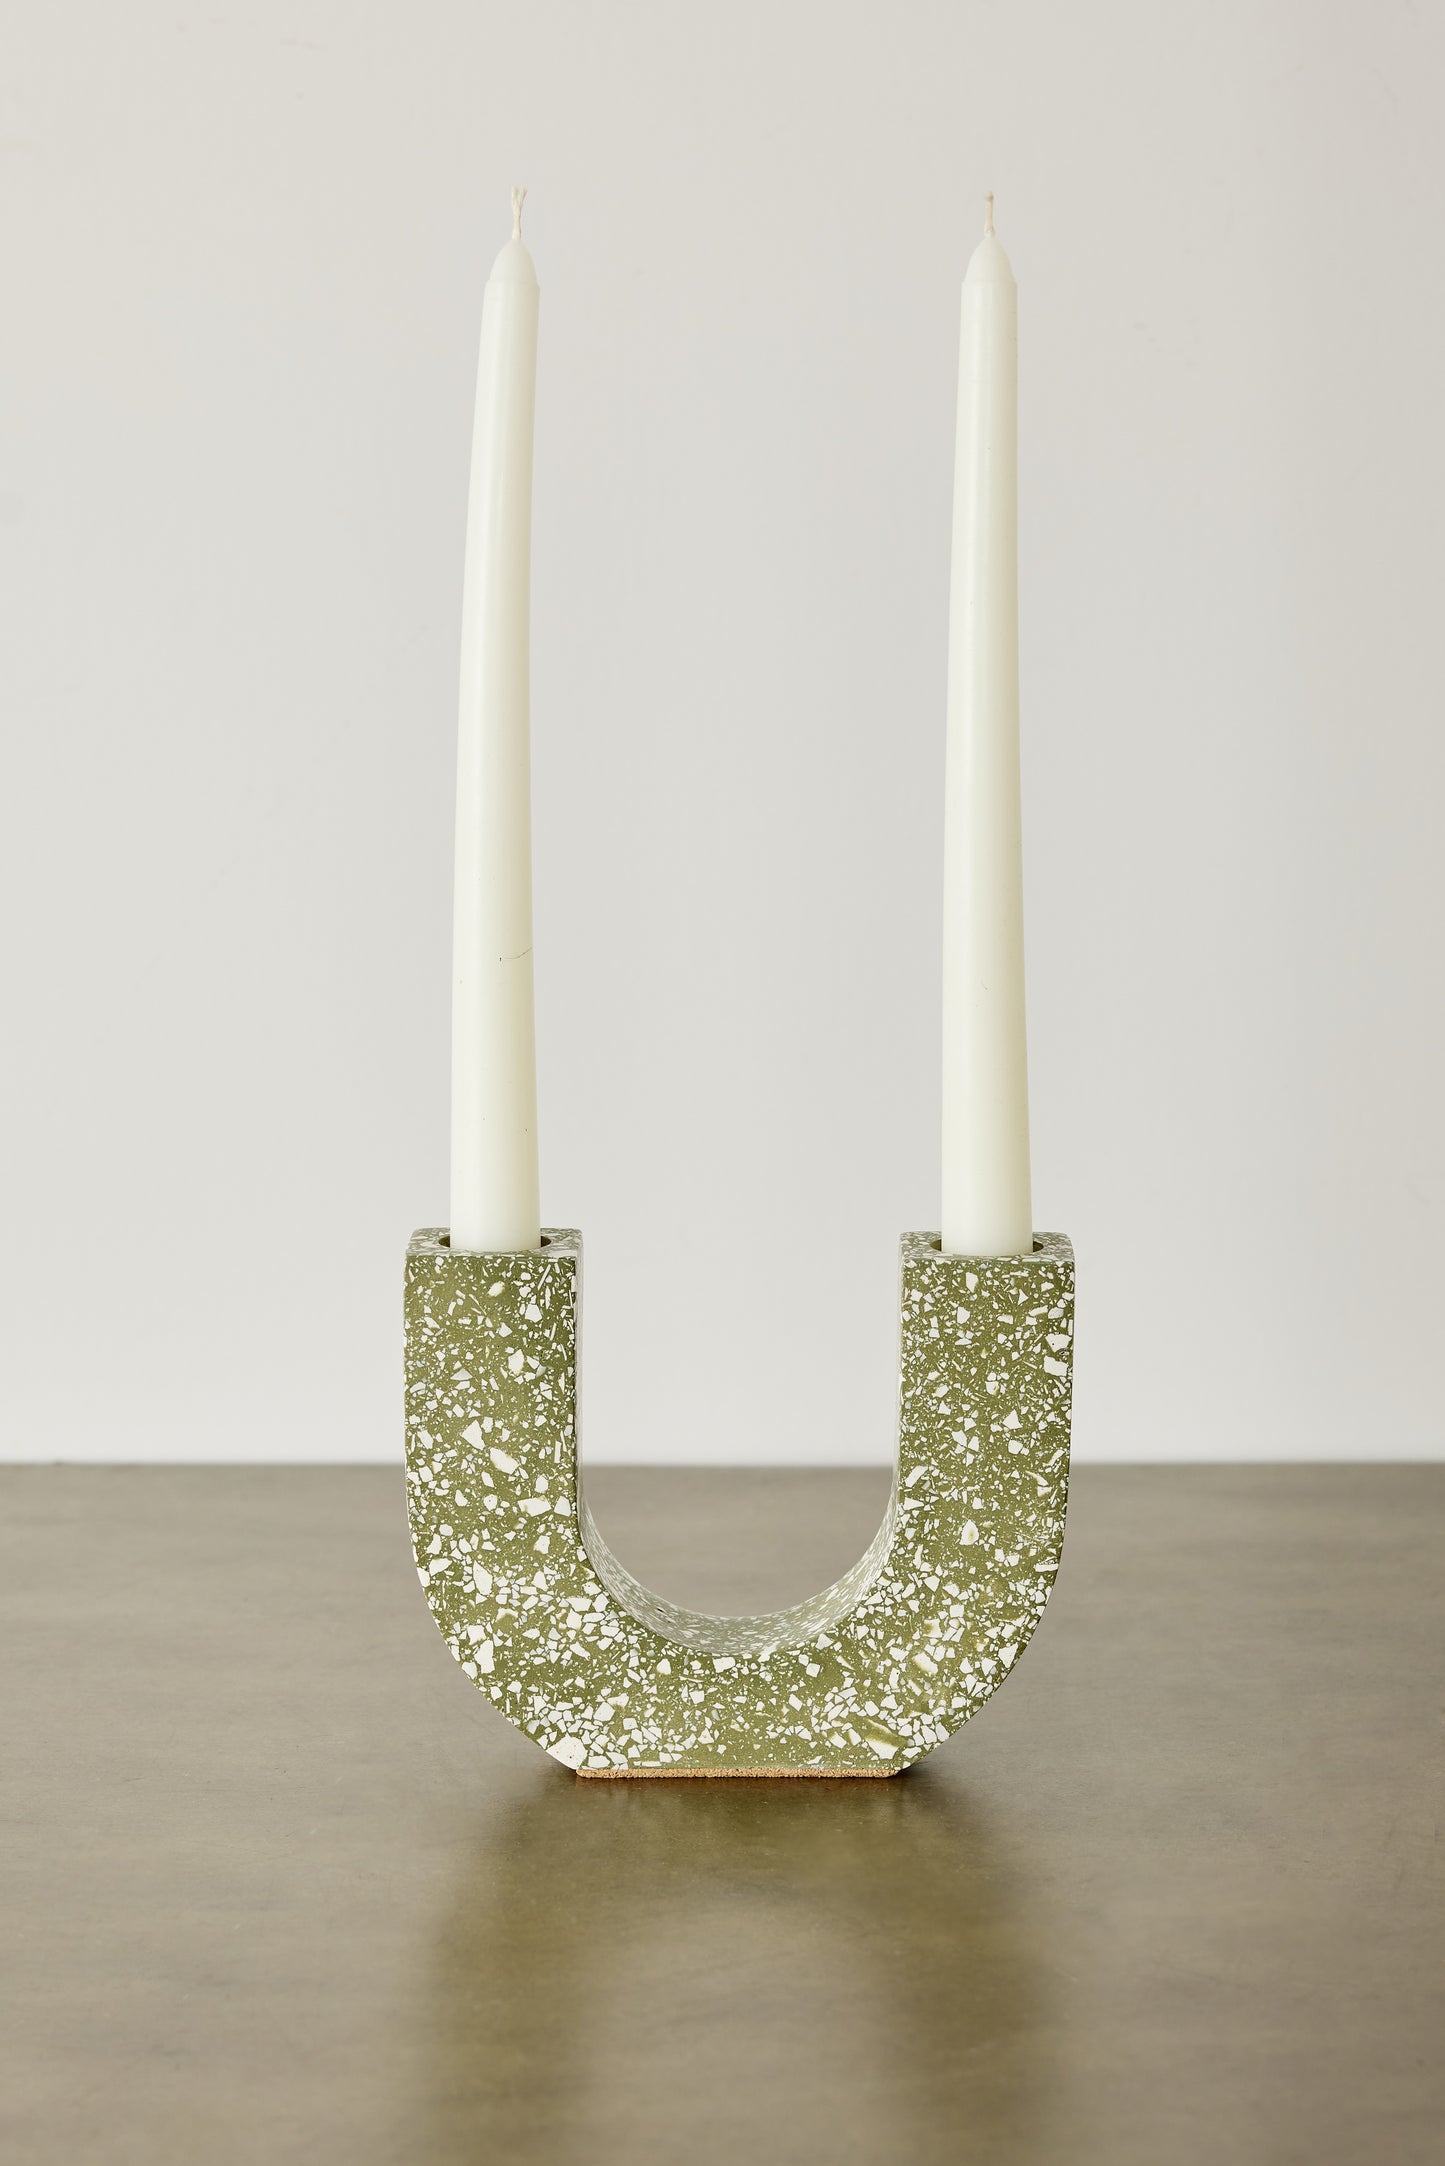 U-shaped Olive & White Terrazzo Taper Candle Holder